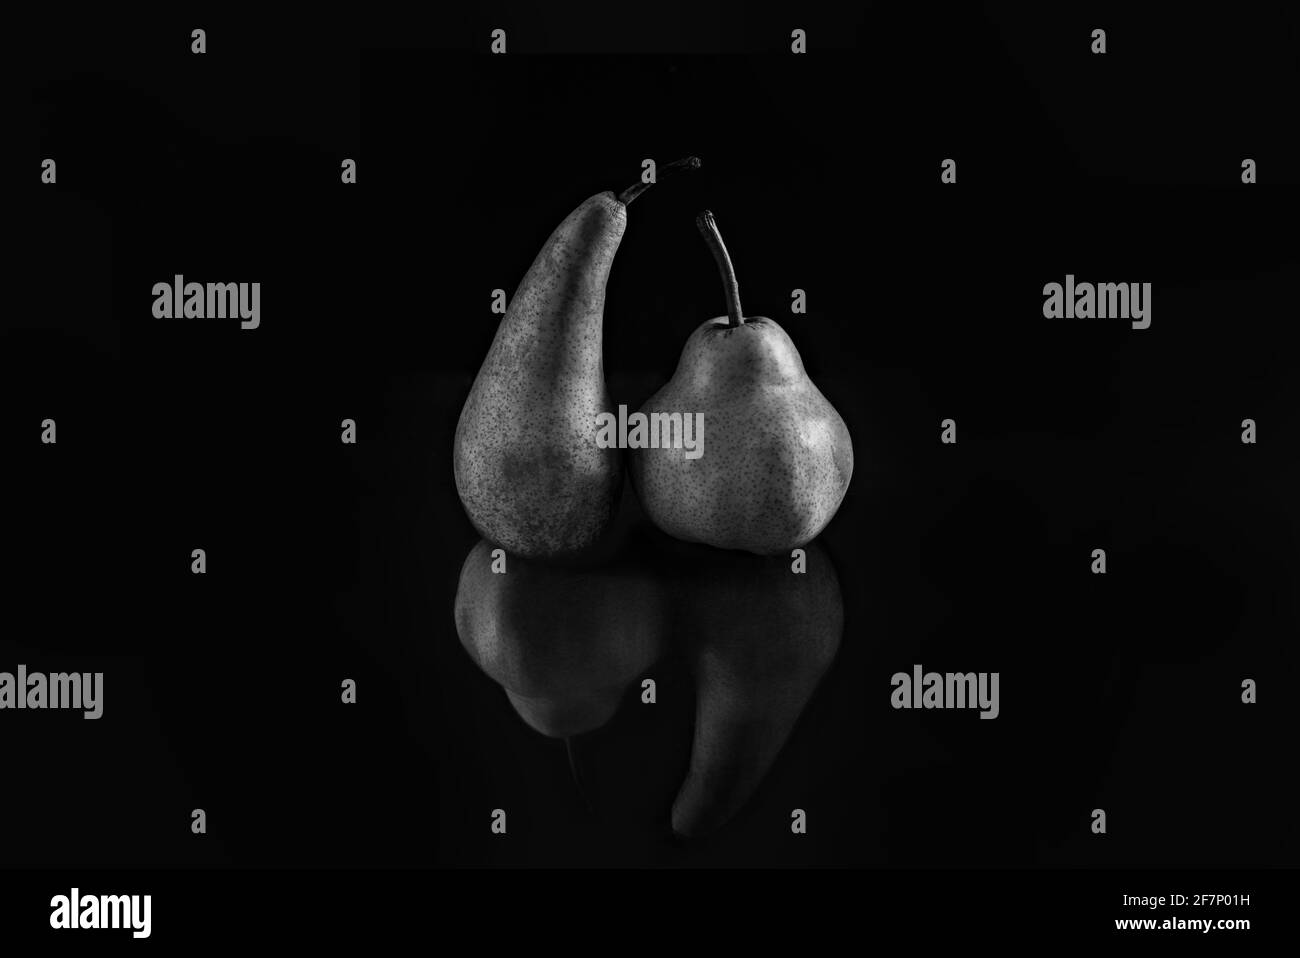 Zwei Birnen verschiedener Sorten auf schwarzem matten Hintergrund. Das Konzept von Toleranz und Körperpositiver. Stockfoto